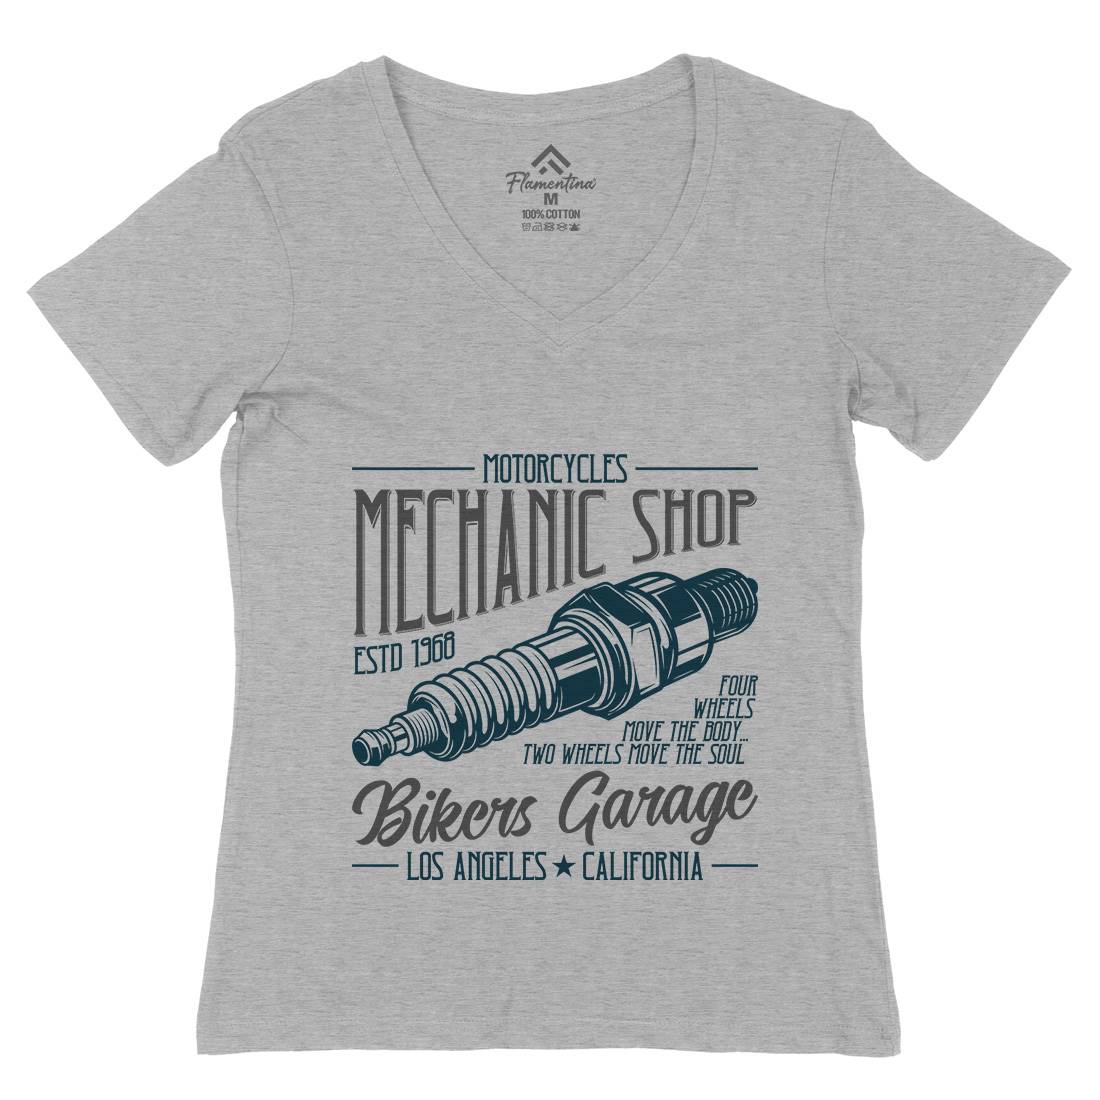 Mechanic Shop Womens Organic V-Neck T-Shirt Motorcycles B836